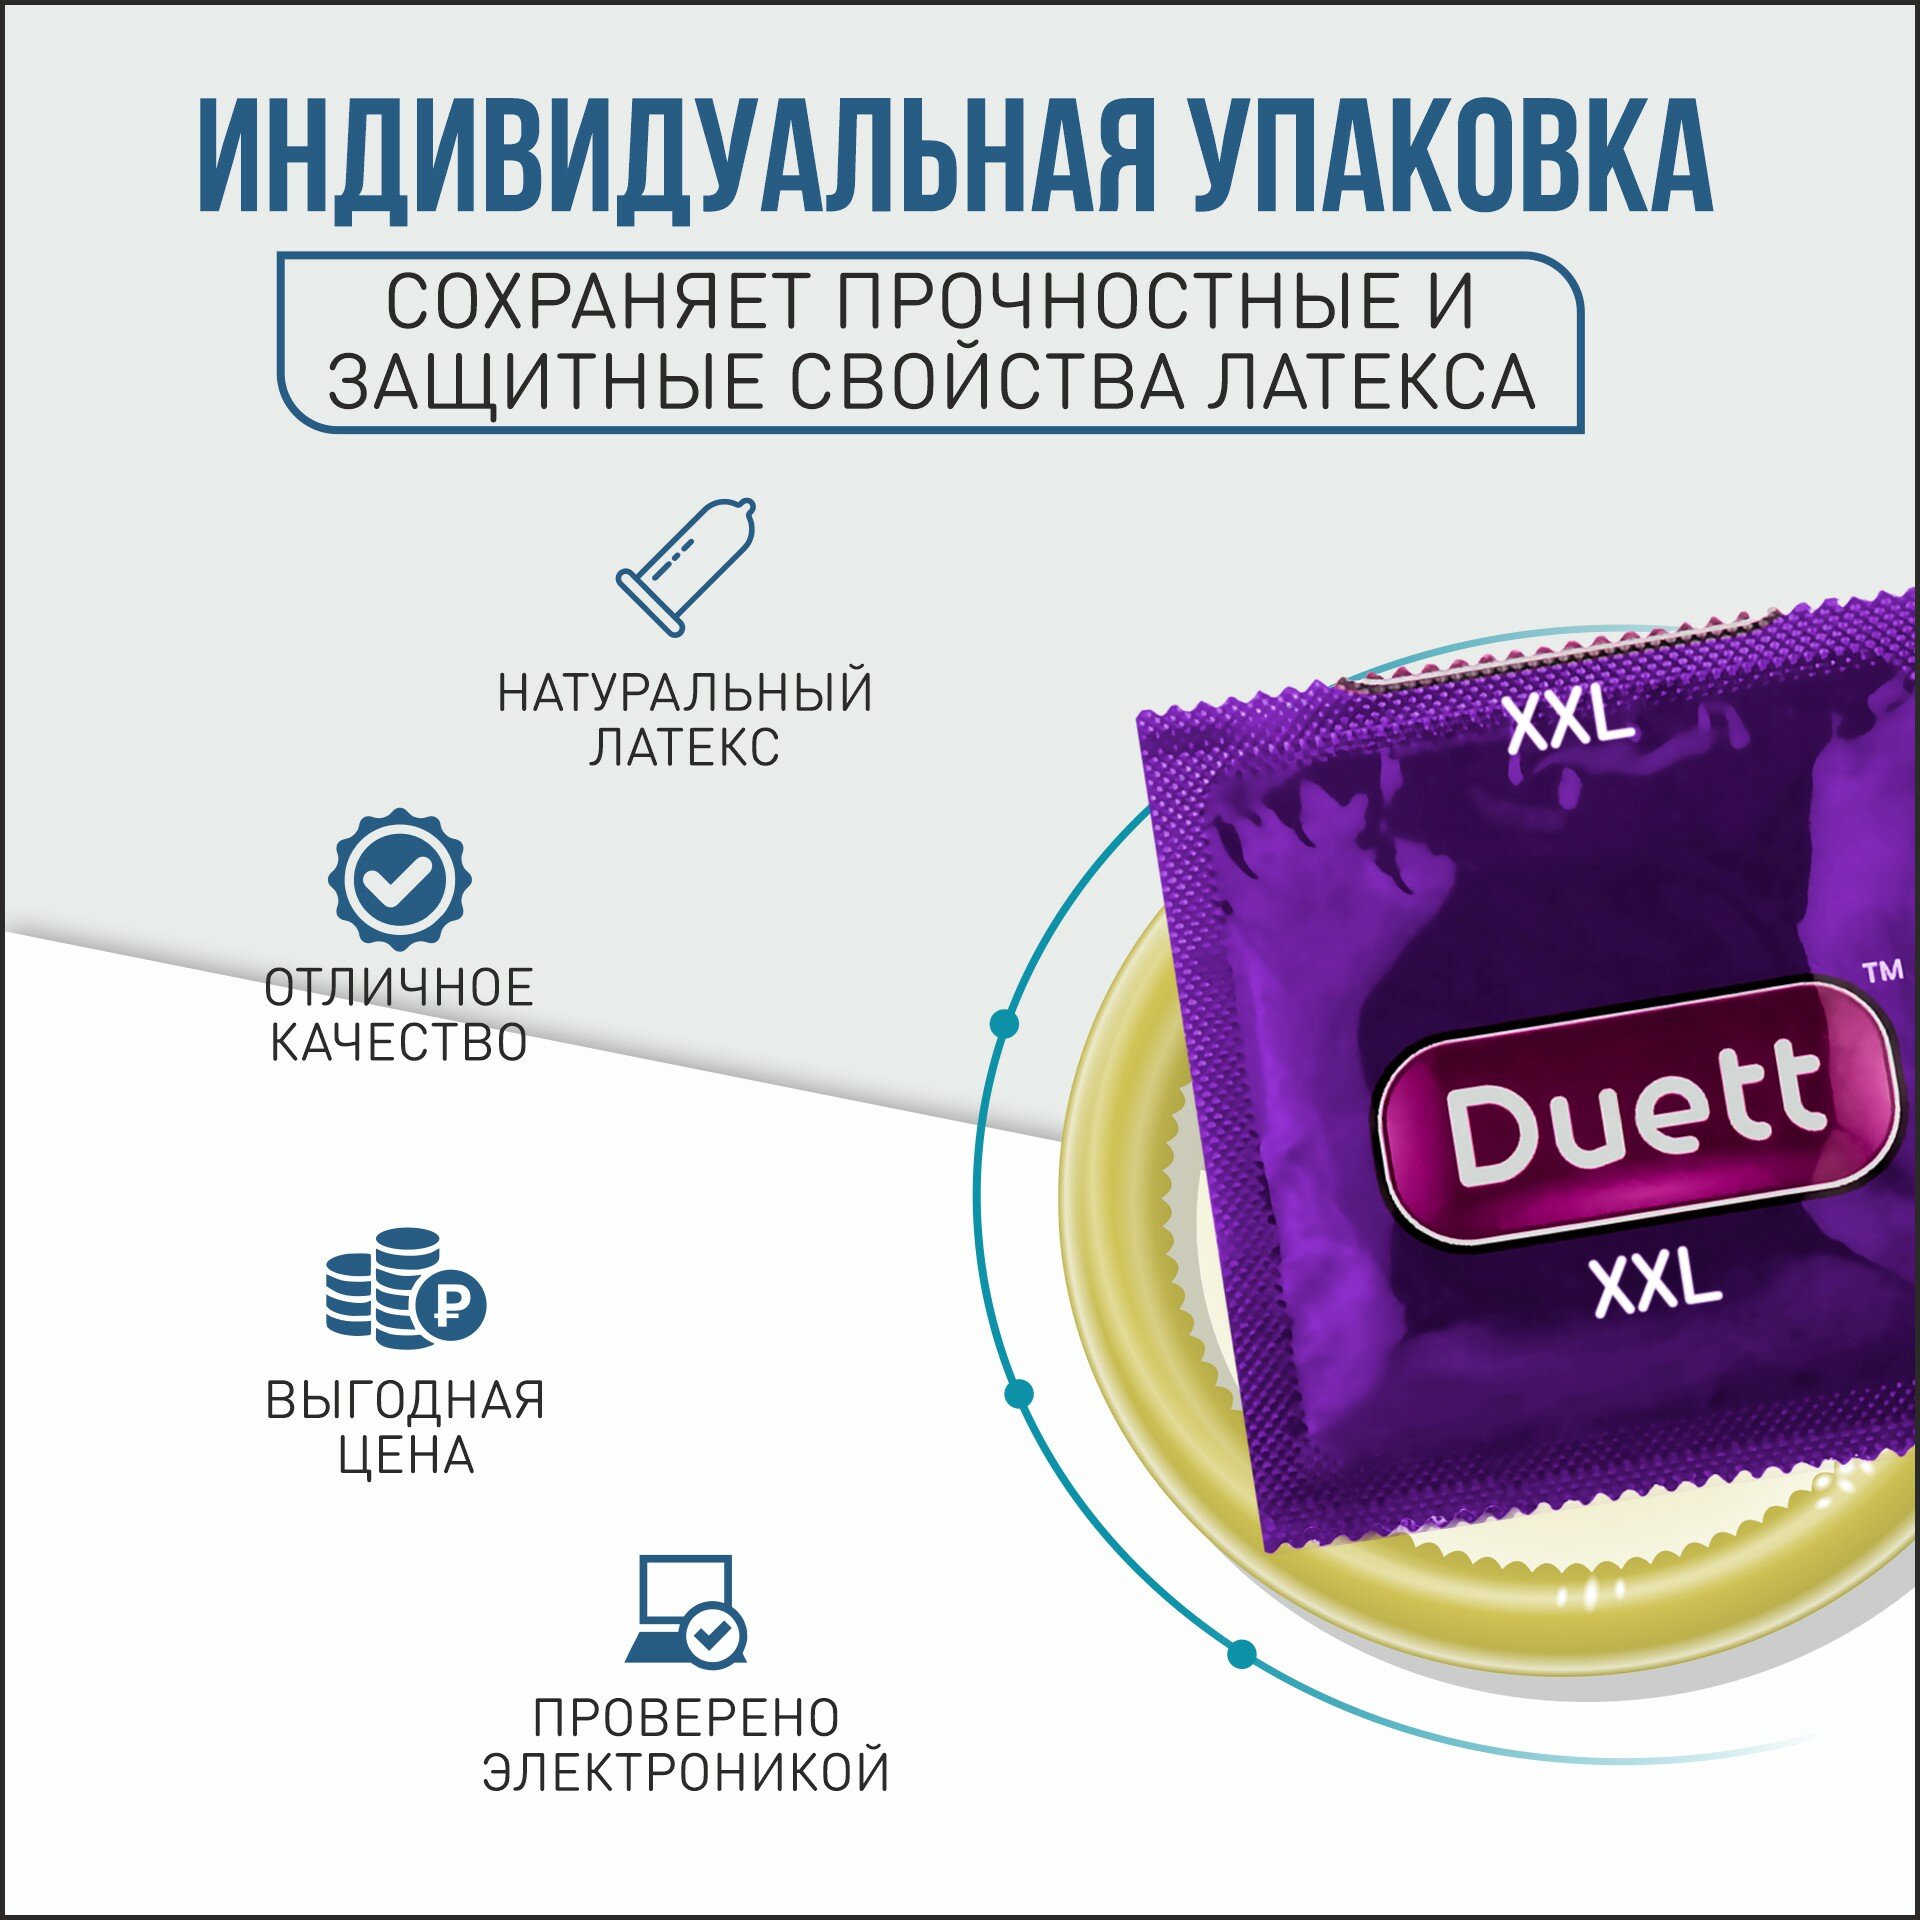 Презервативы DUETT XXL увеличенного размера 12 штук